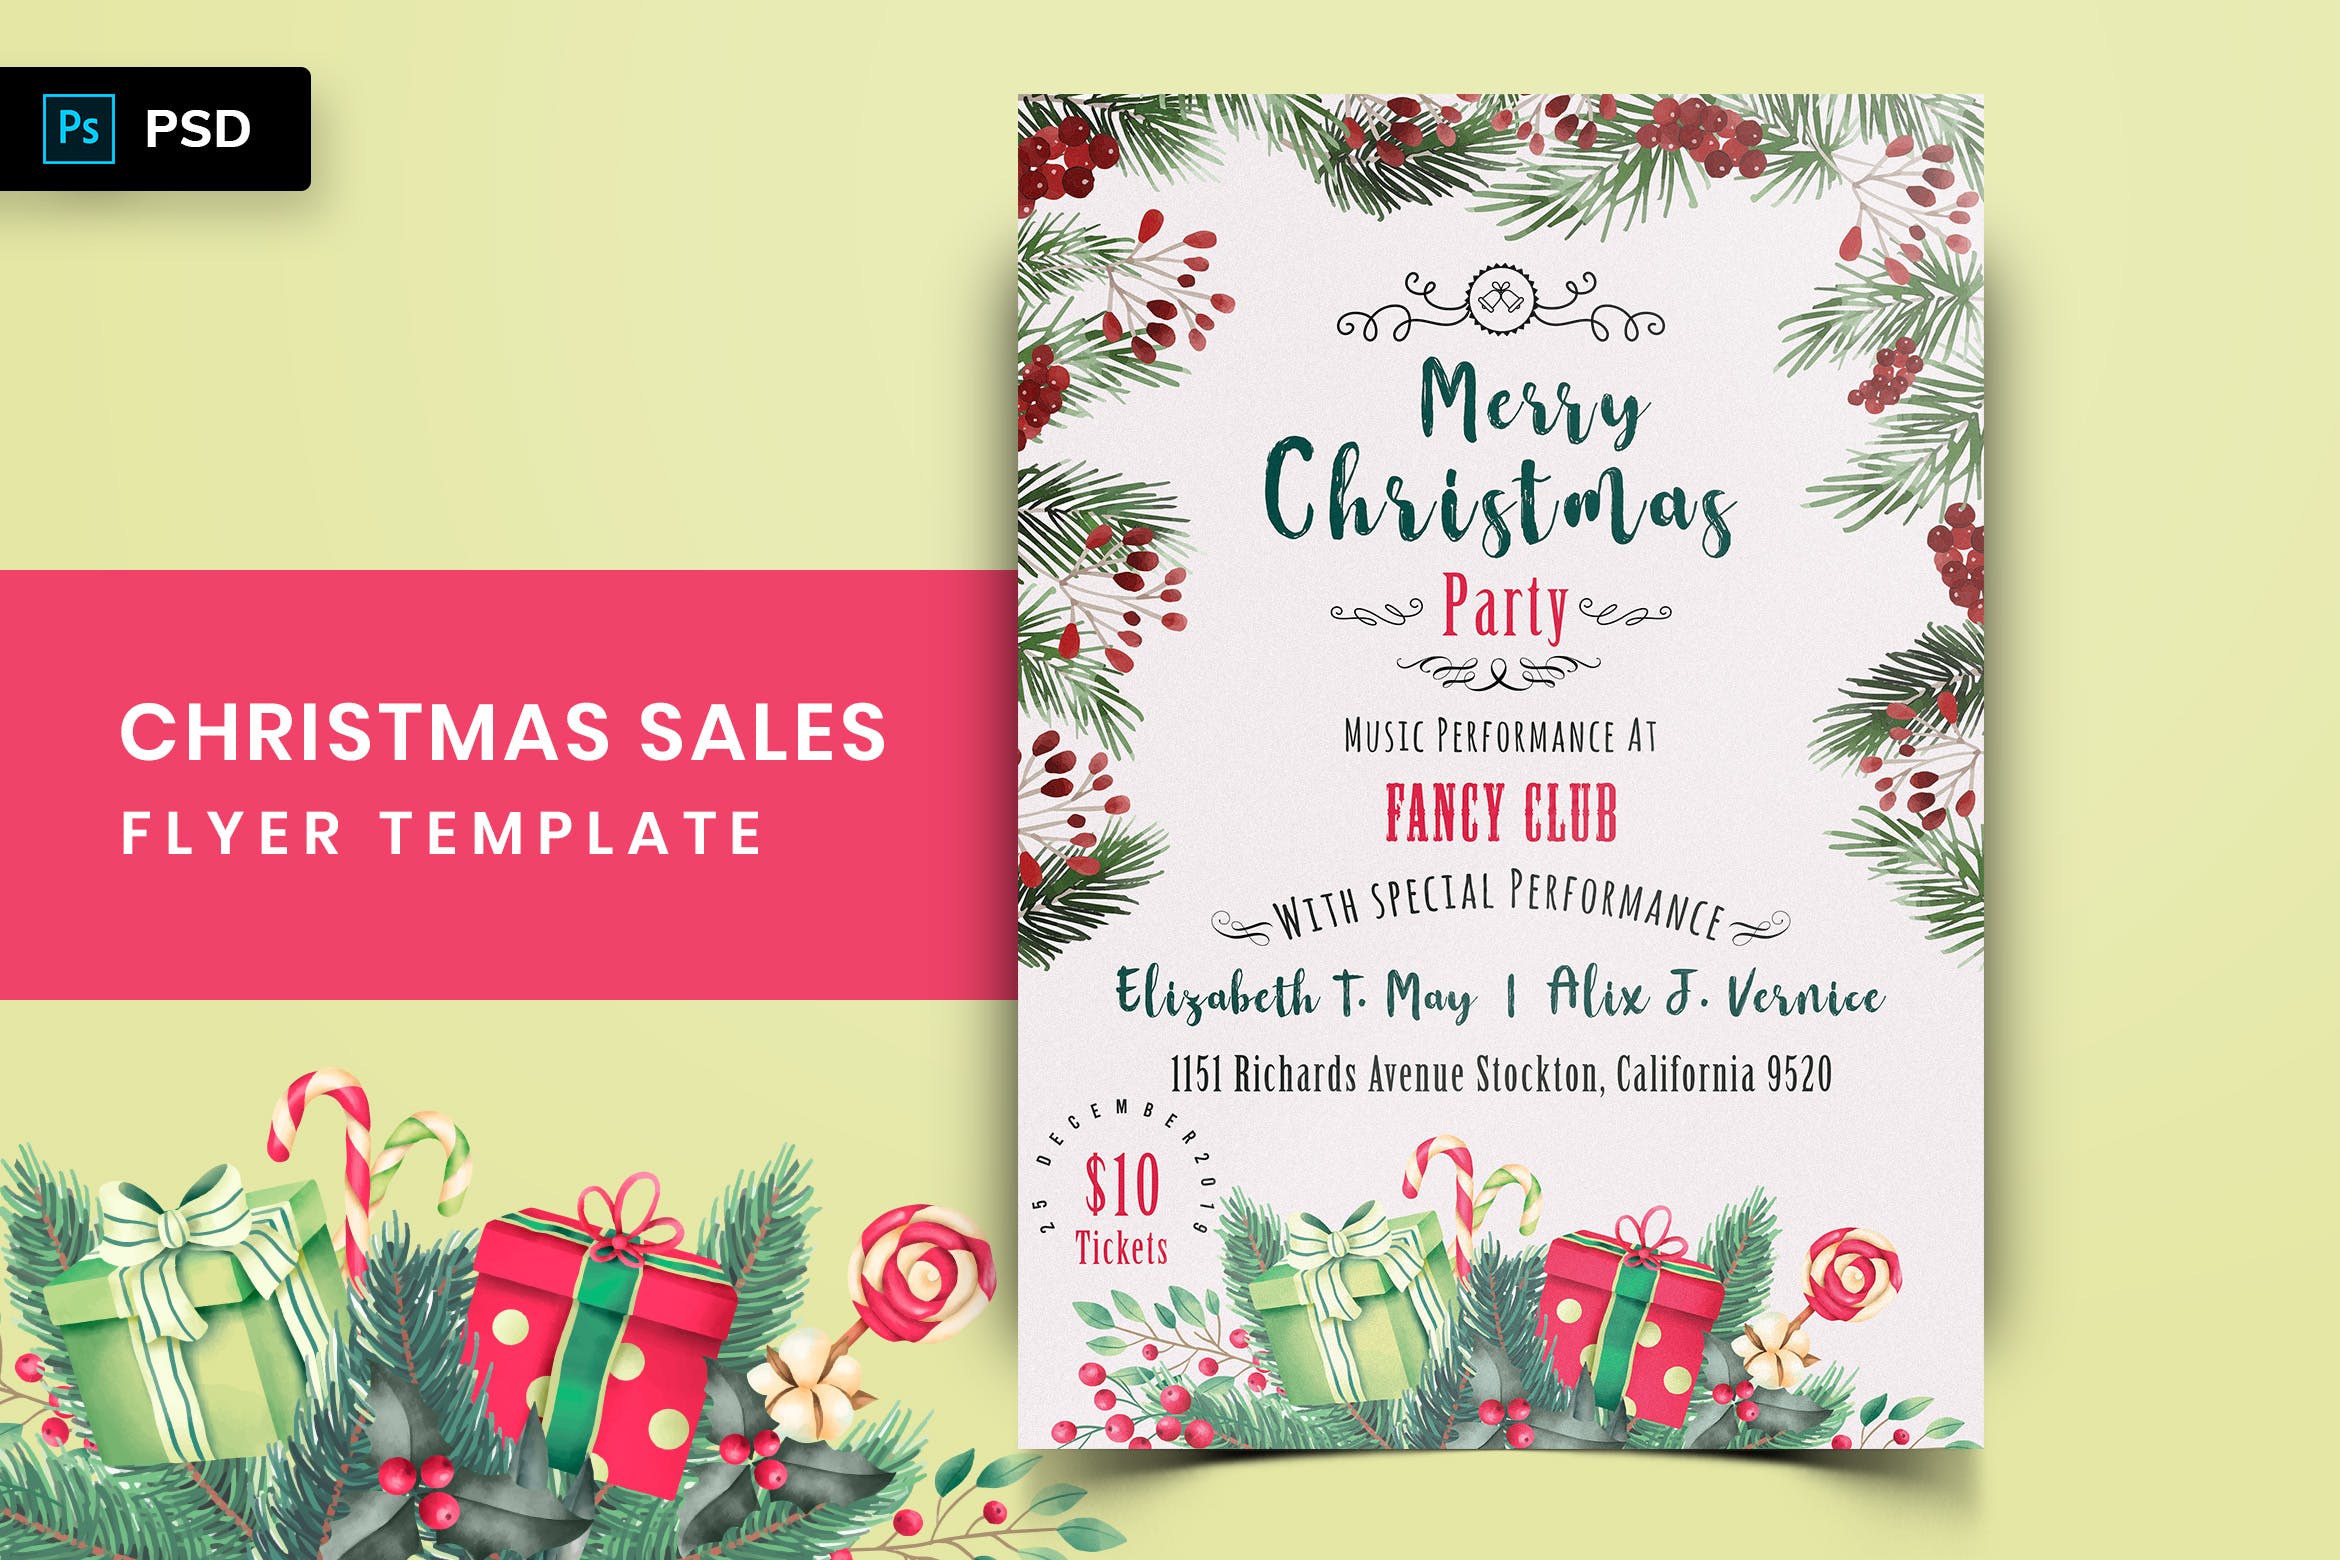 水彩手绘风格圣诞节超低折扣广告海报传单设计模板v2 Christmas Offer Sales Flyer-02插图